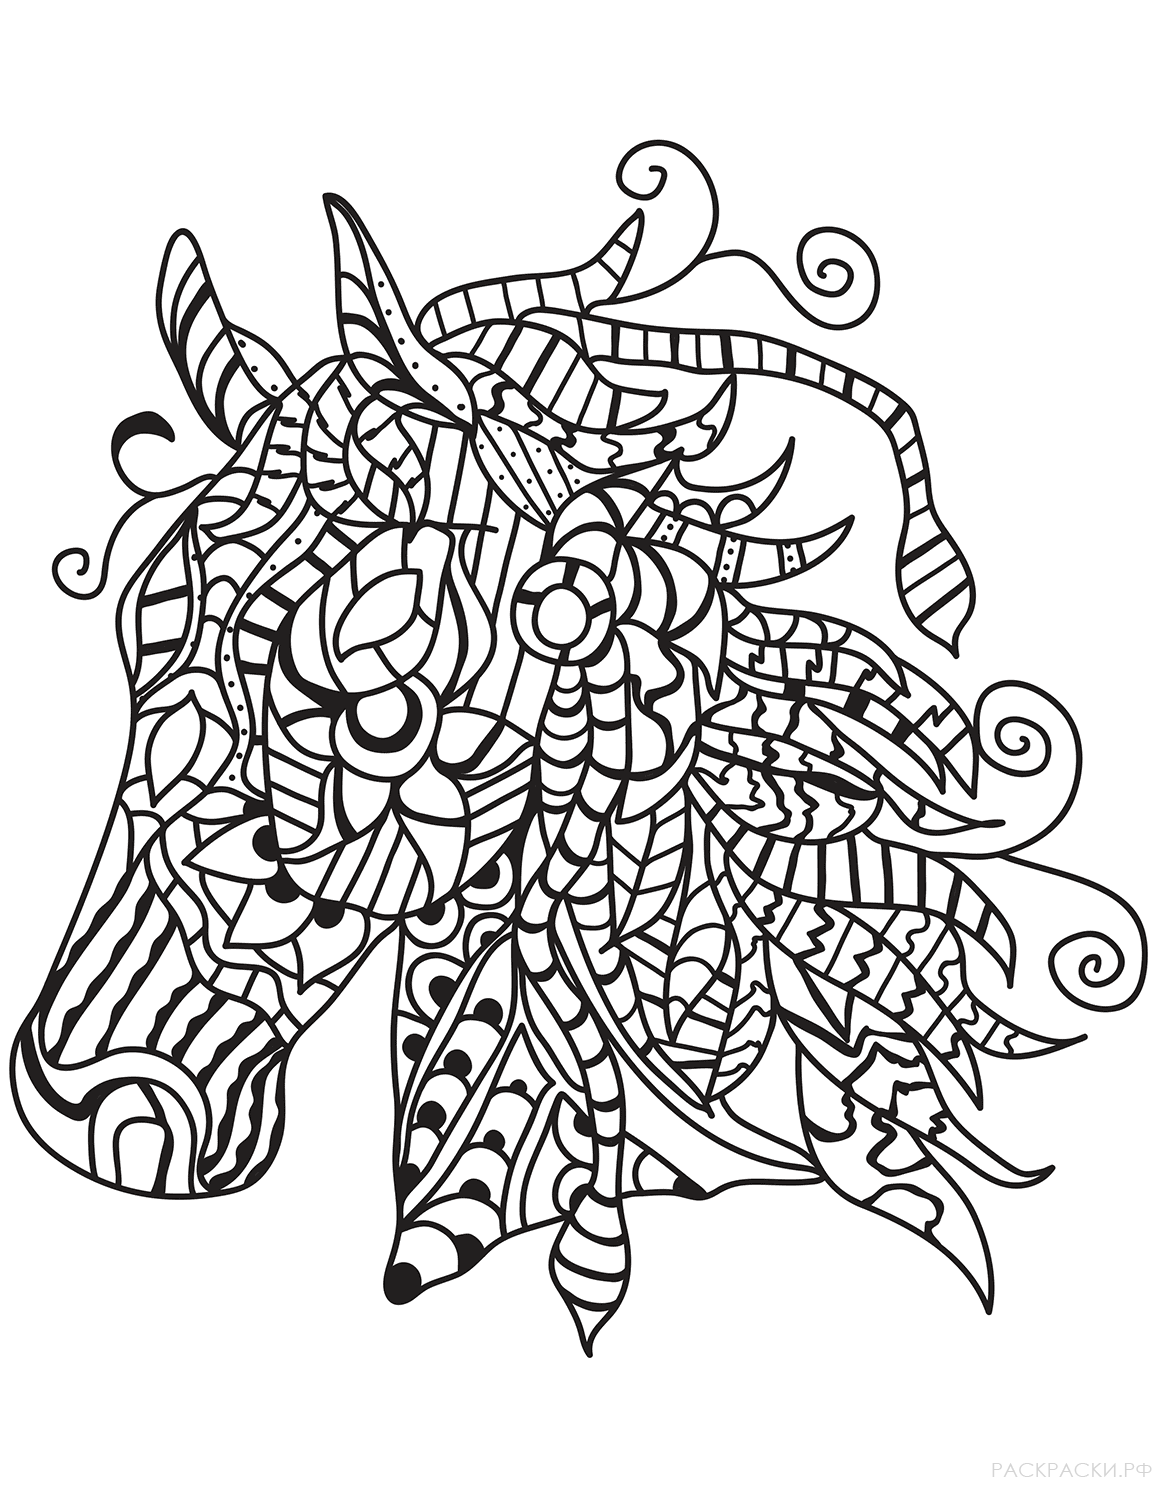 Раскраска Голова лошади в технике дзентангл 8